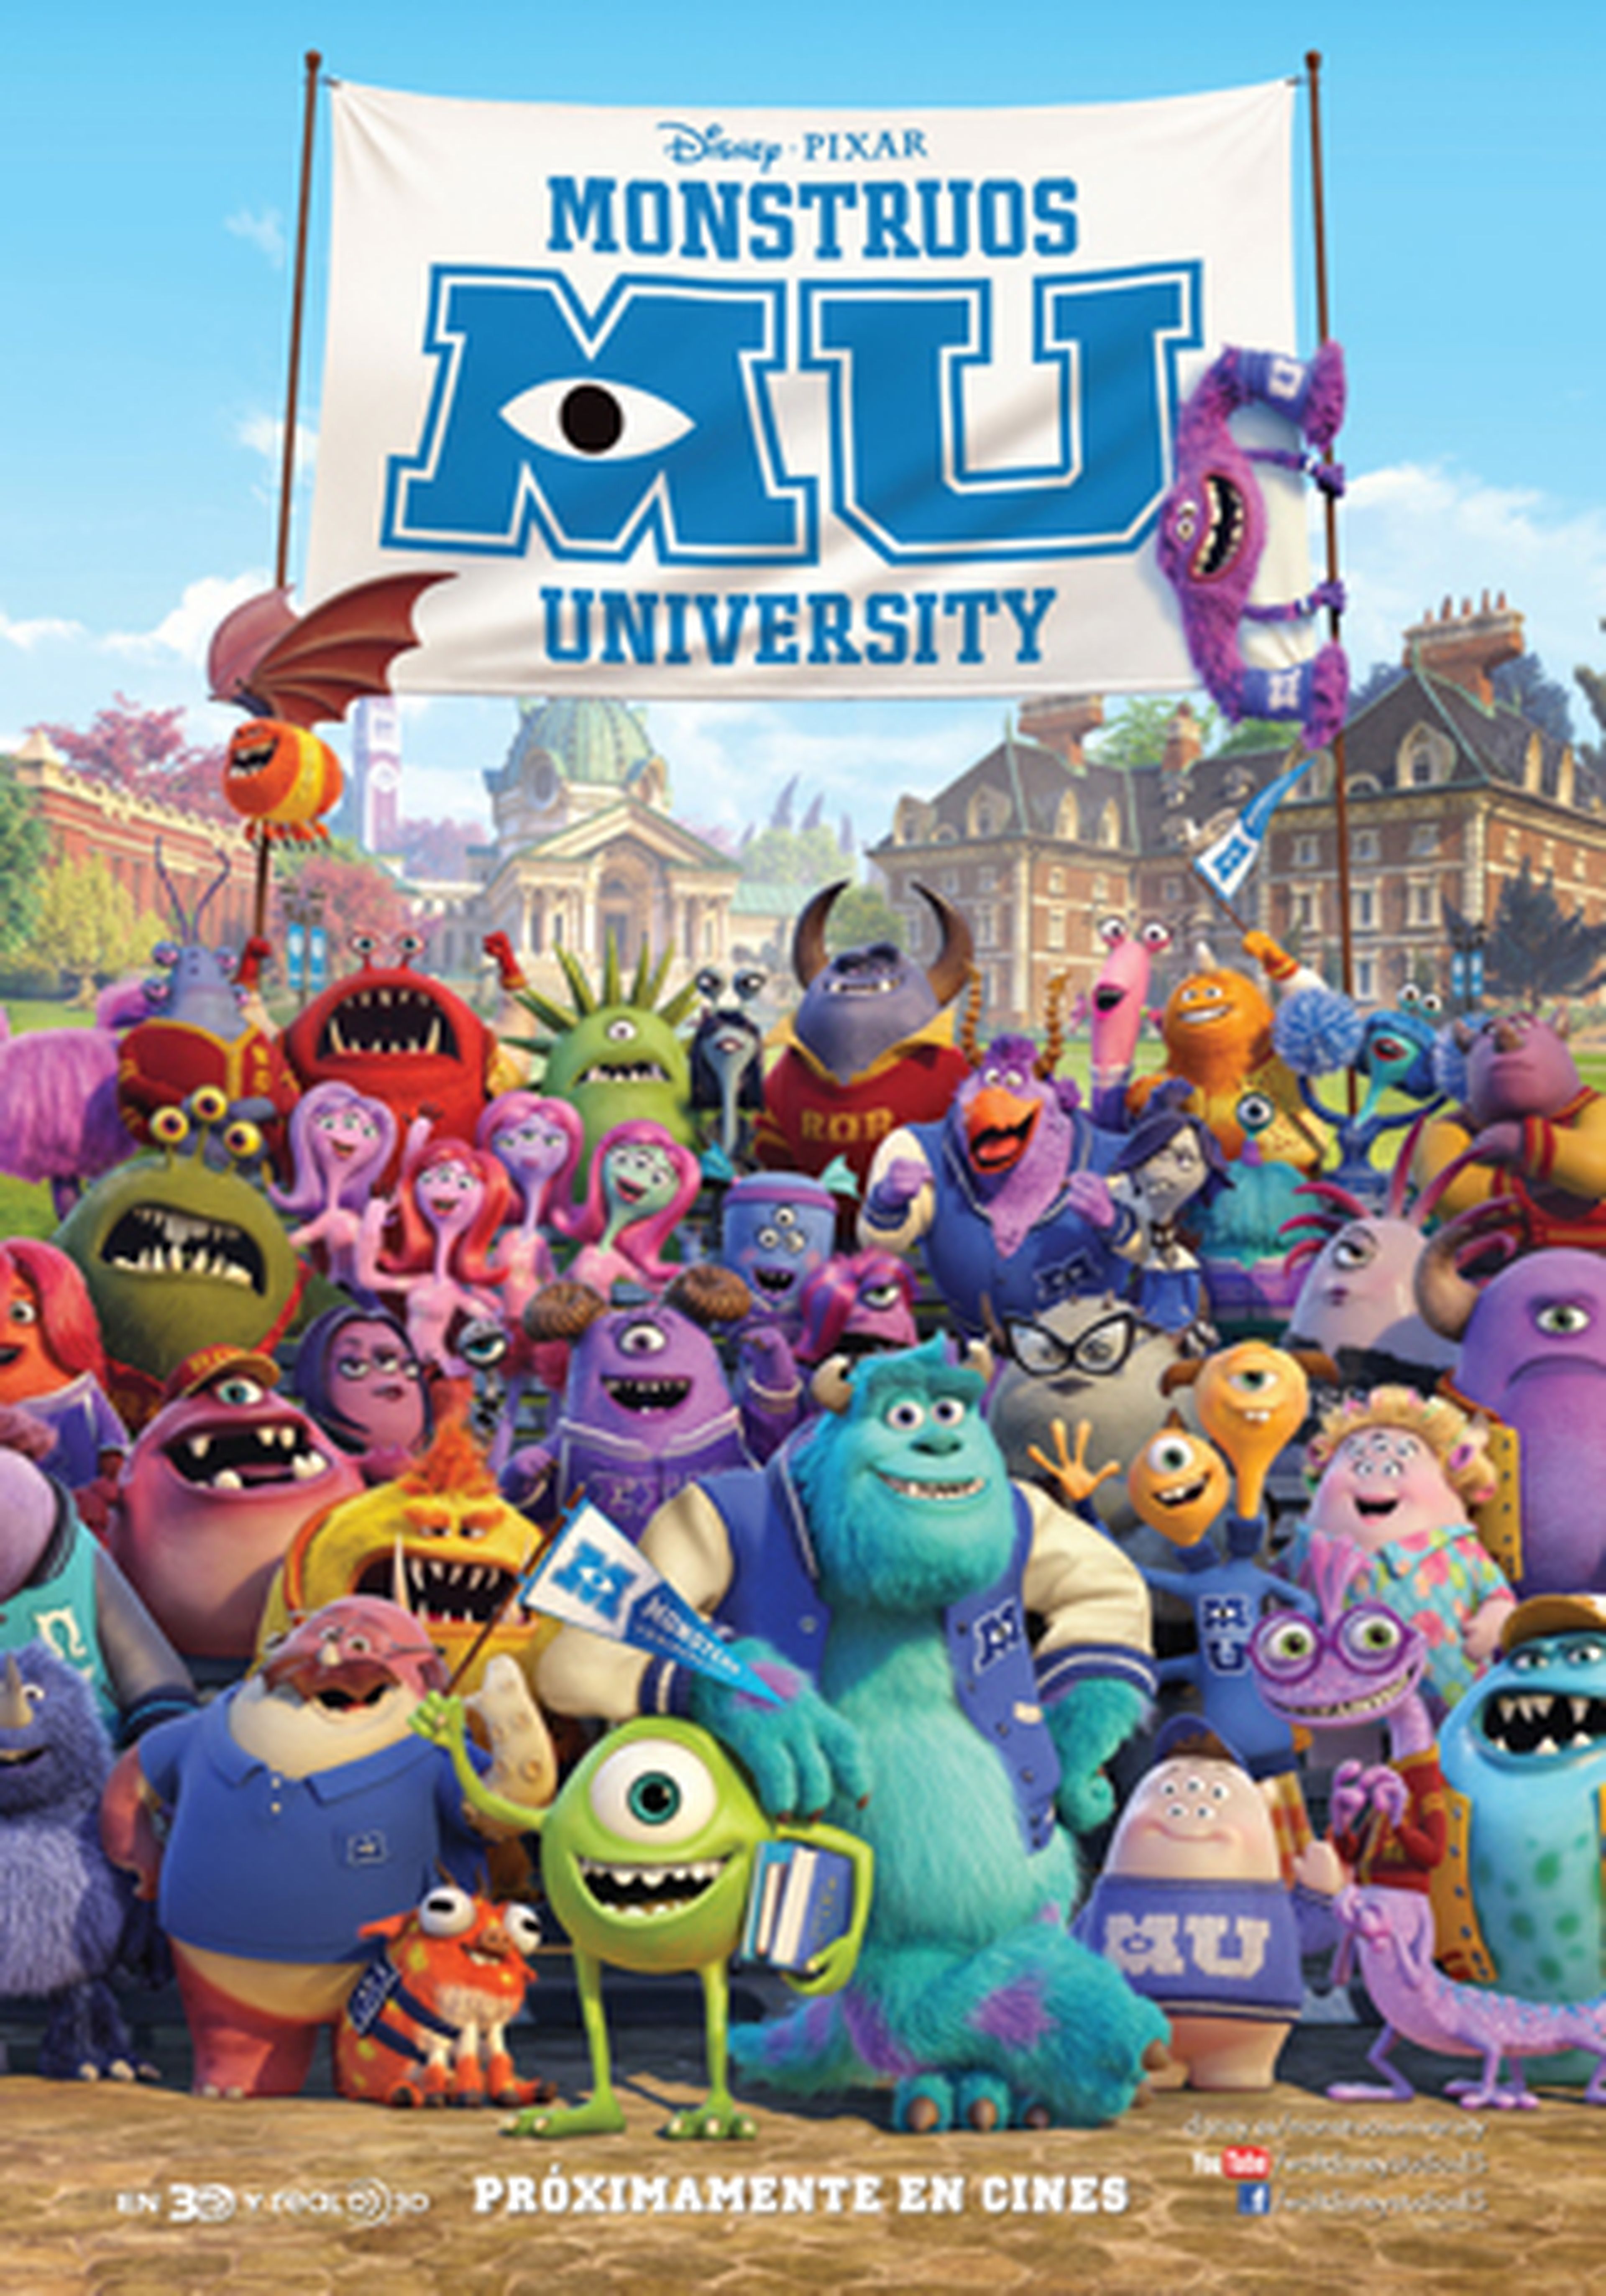 Nuevo cartel y galería de Monsters University